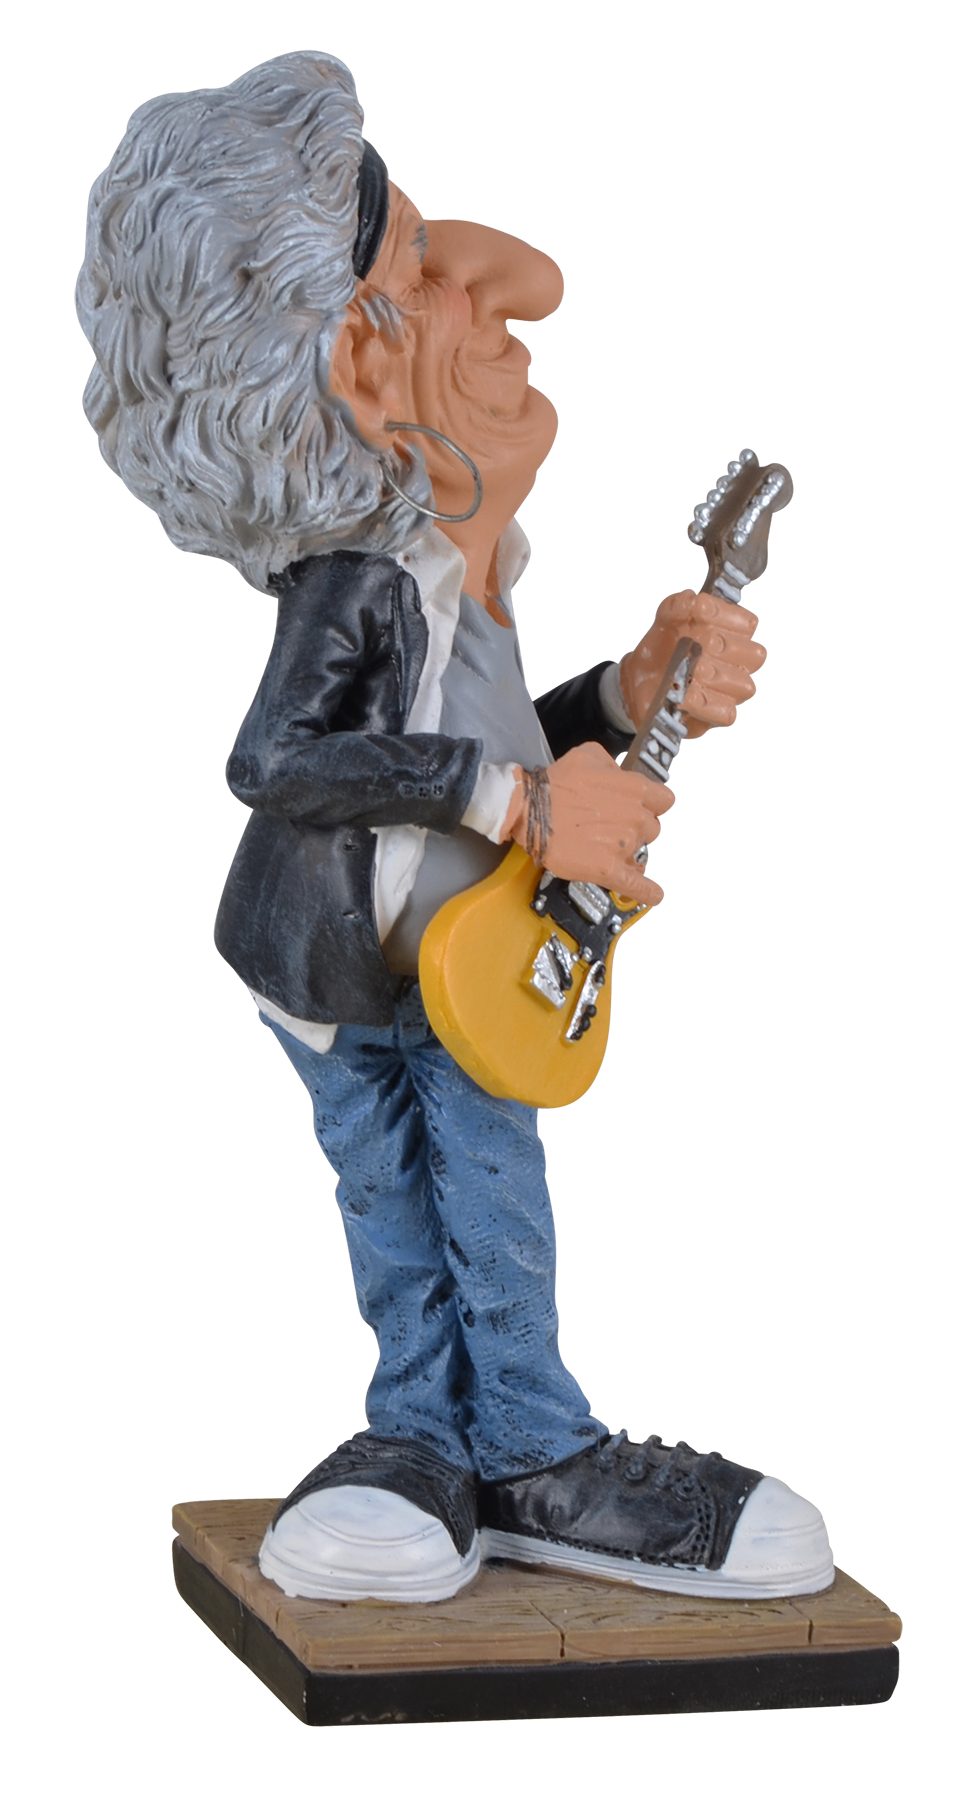 LxBxH Keith ca. aus der coloriert, 8x6x17cm berühmtesten der Rockband Funny Hand von Life-Rockstar Dekofigur direct Gmbh von Kunststein, Welt, Vogler